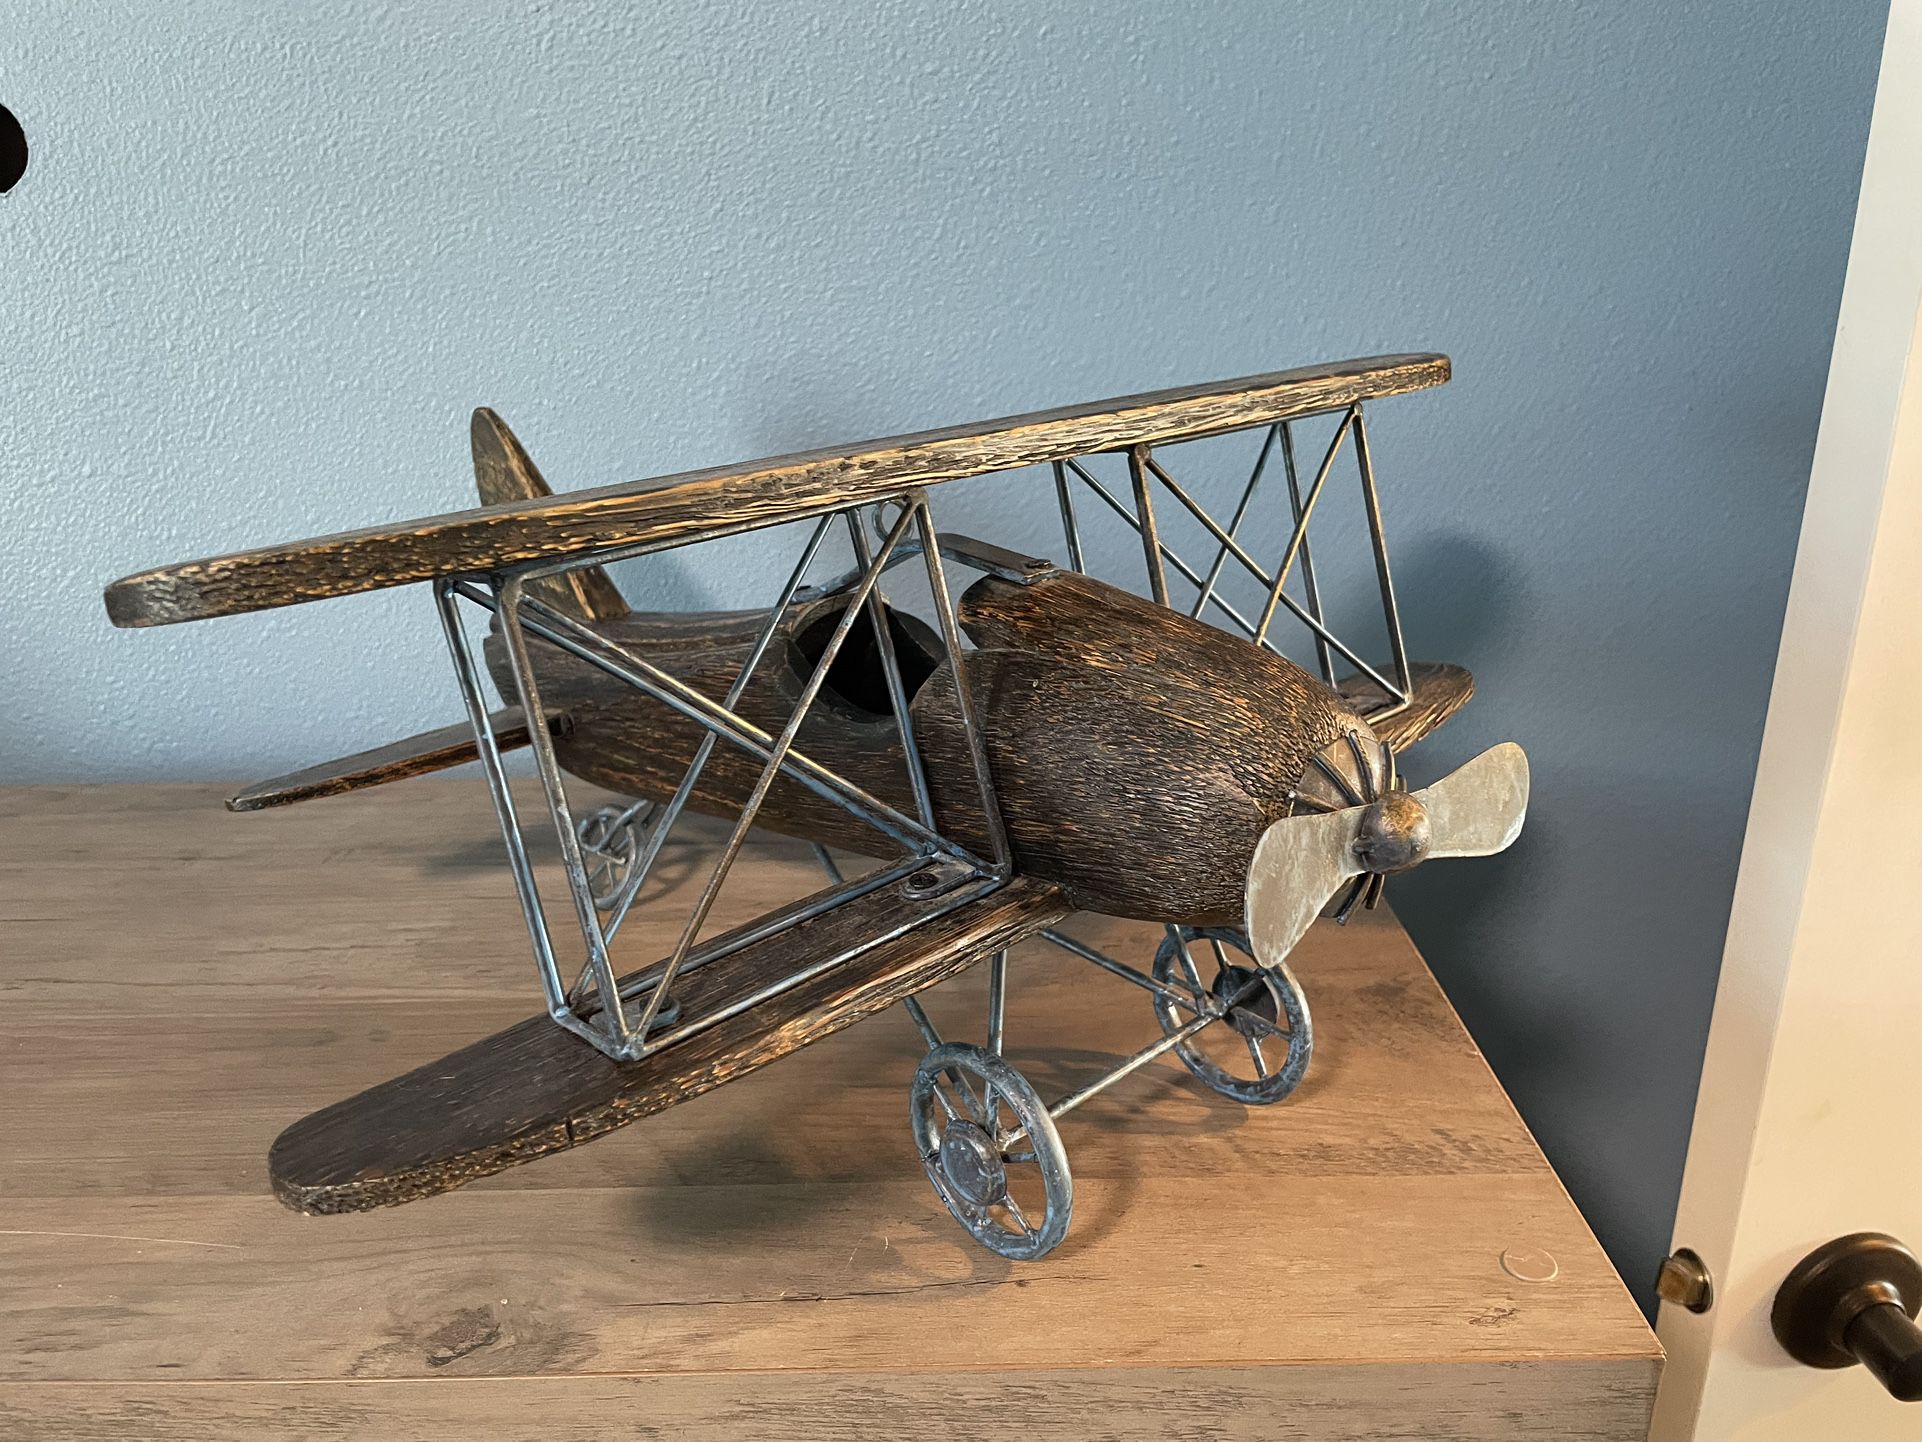 Antique Airplane